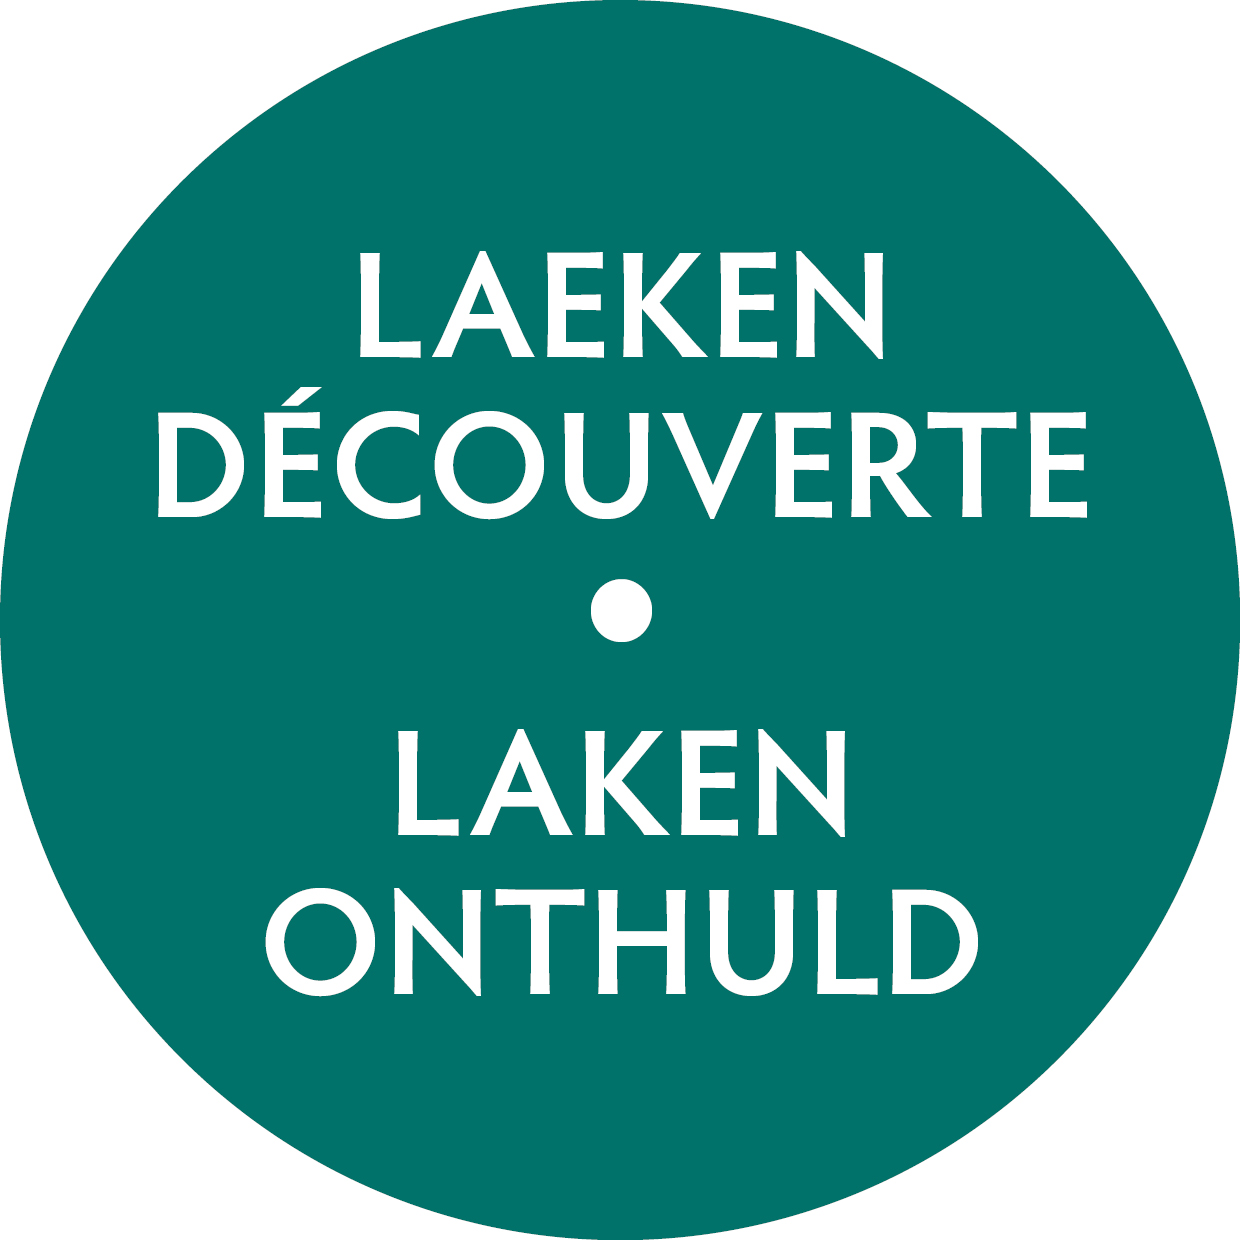 Laeken Découverte asbl